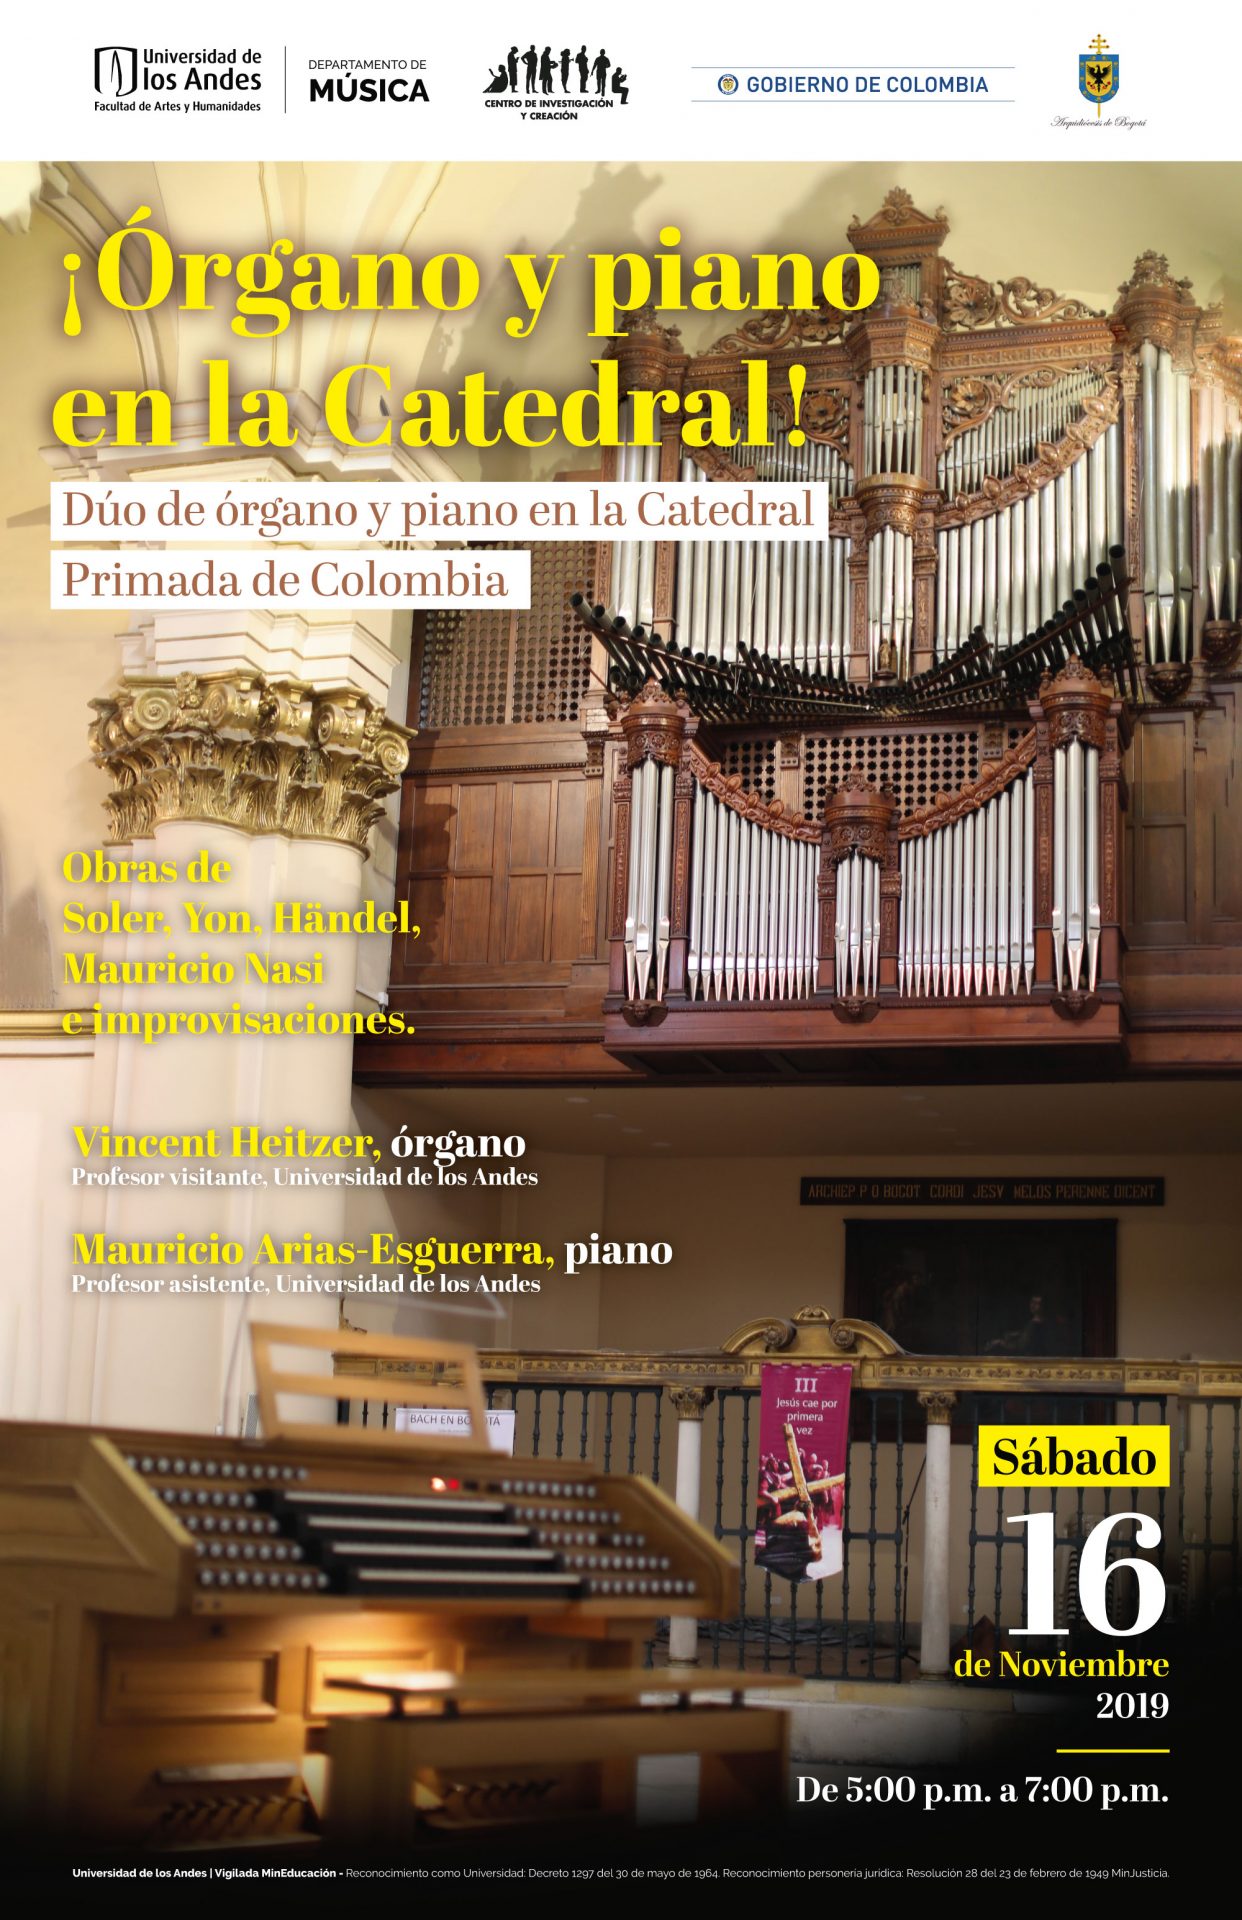 Órgano y piano en la Catedral Primada de Colombia